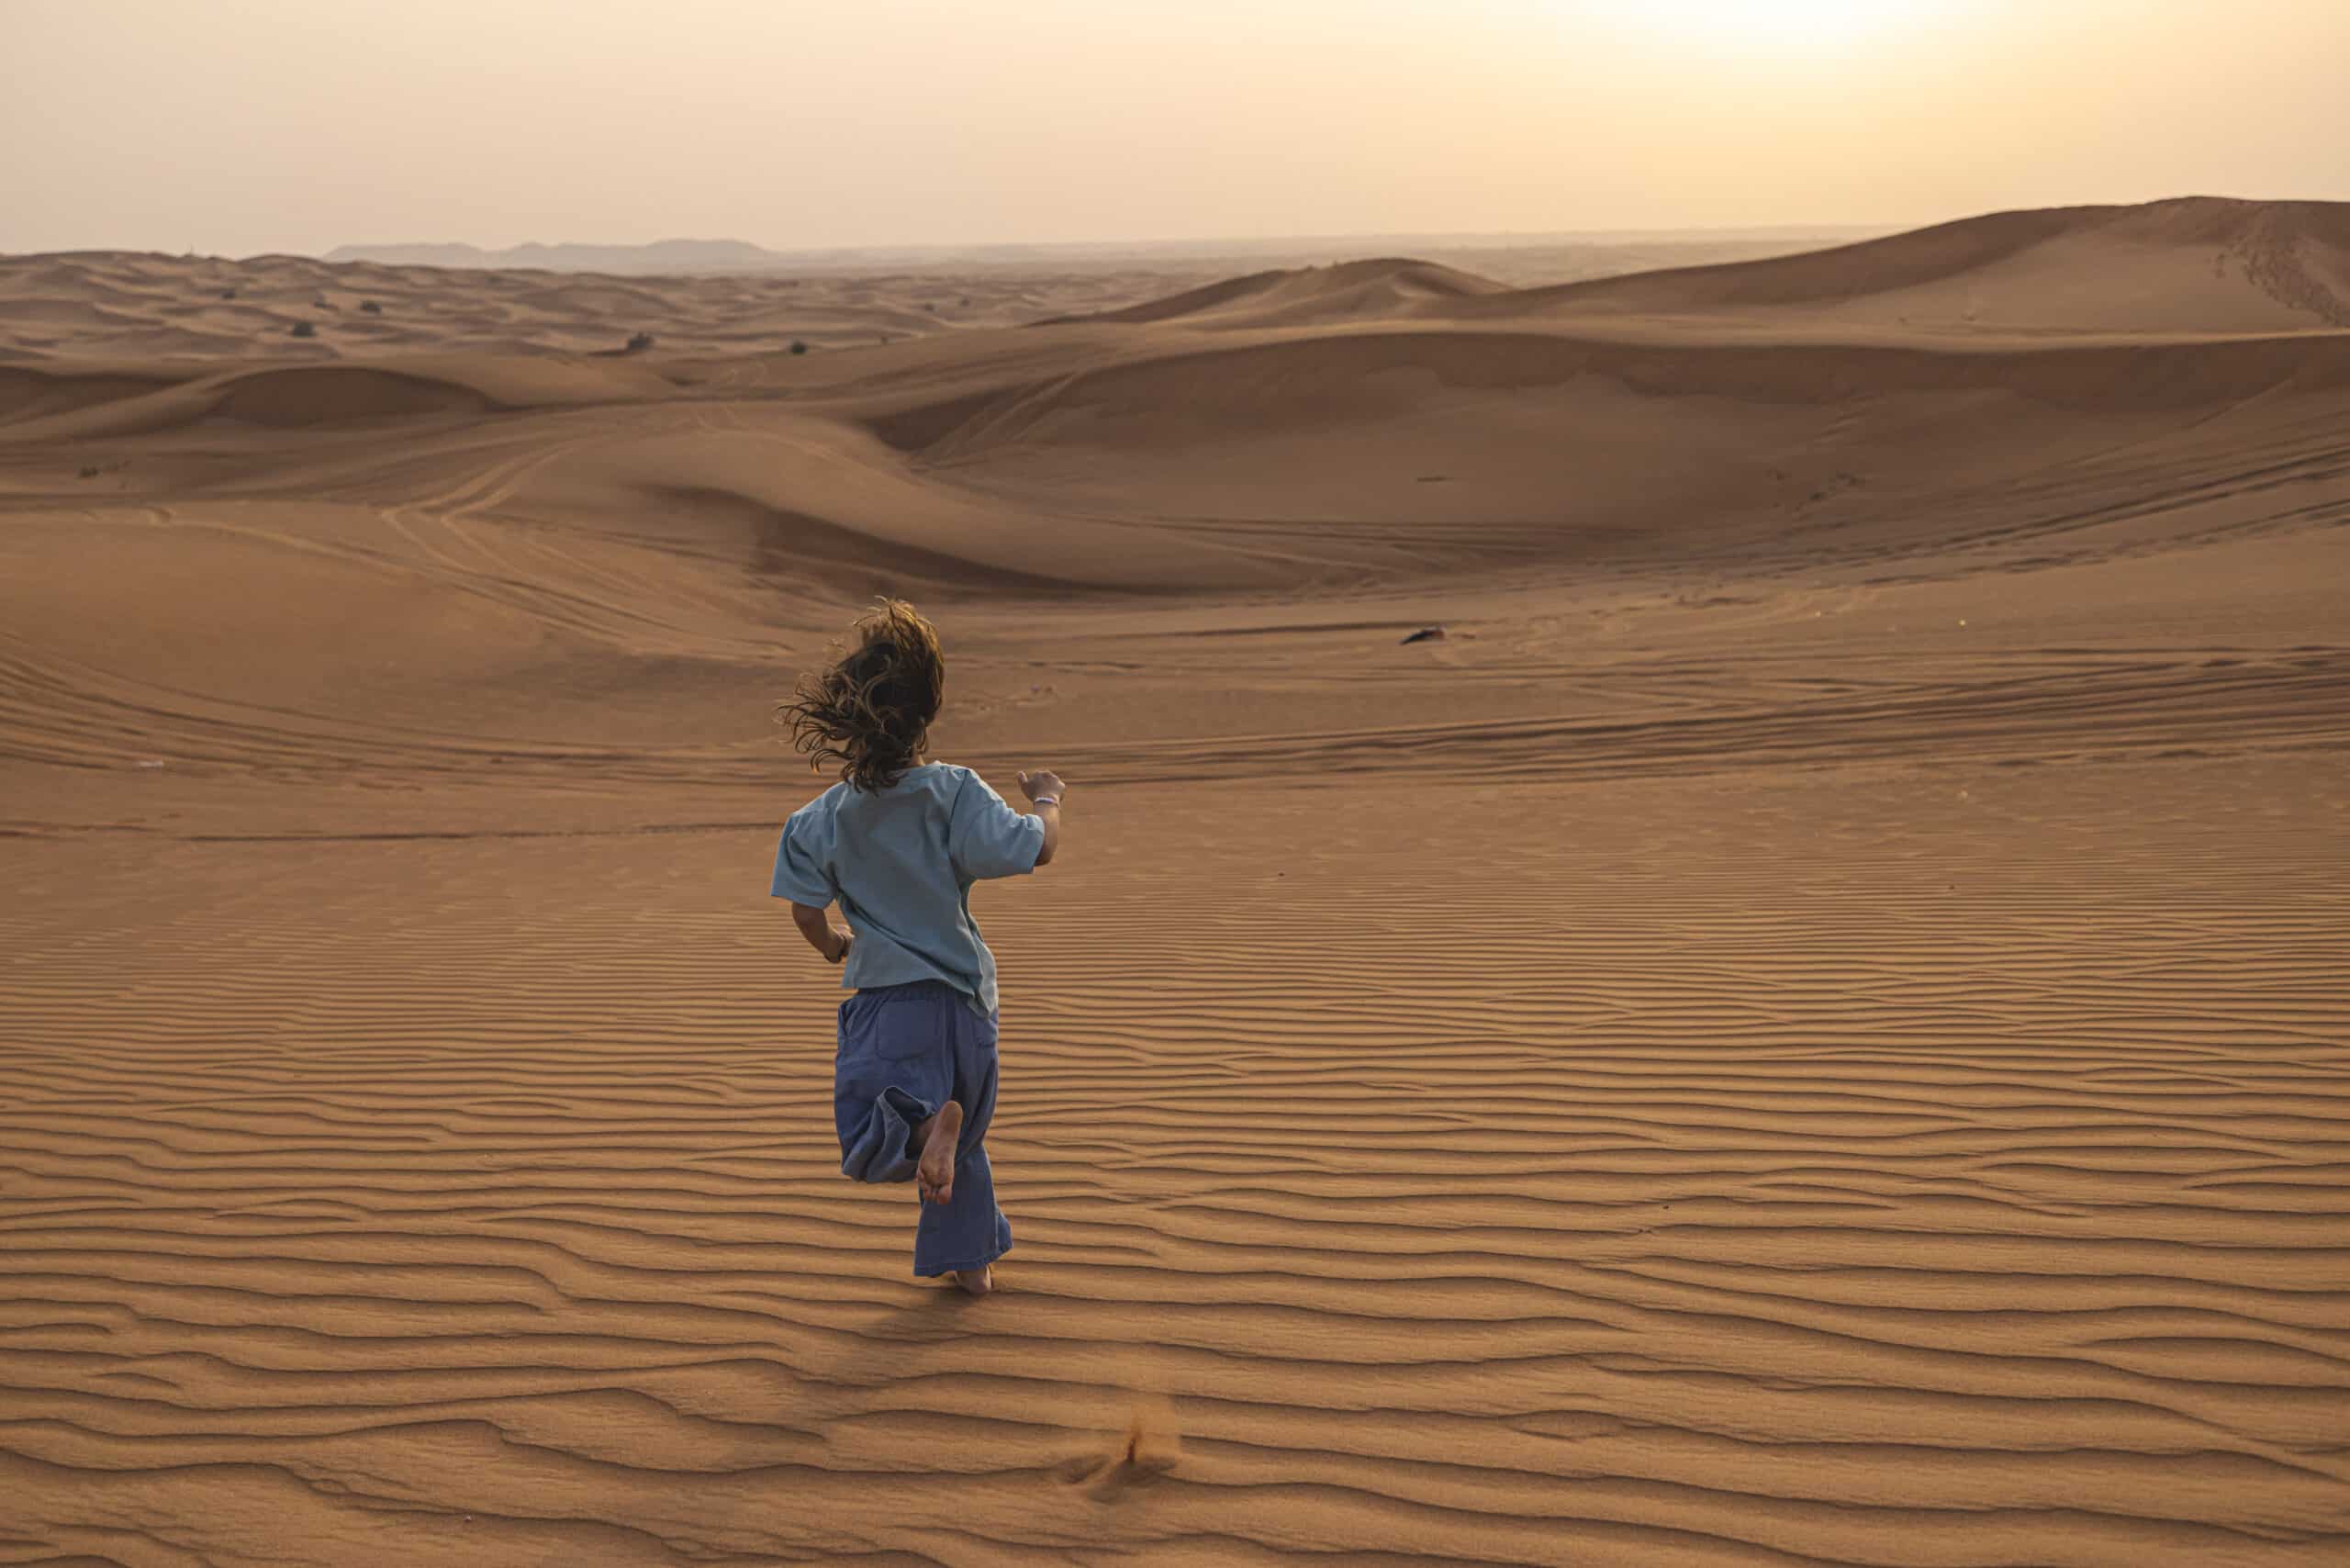 Ein kleines Kind läuft bei Sonnenuntergang über Sanddünen und fängt die Landschaft mit einem Smartphone ein, während seine Haare im Wind wehen. Die Wüste strahlt in einem warmen orangefarbenen Glanz. © Fotografie Tomas Rodriguez